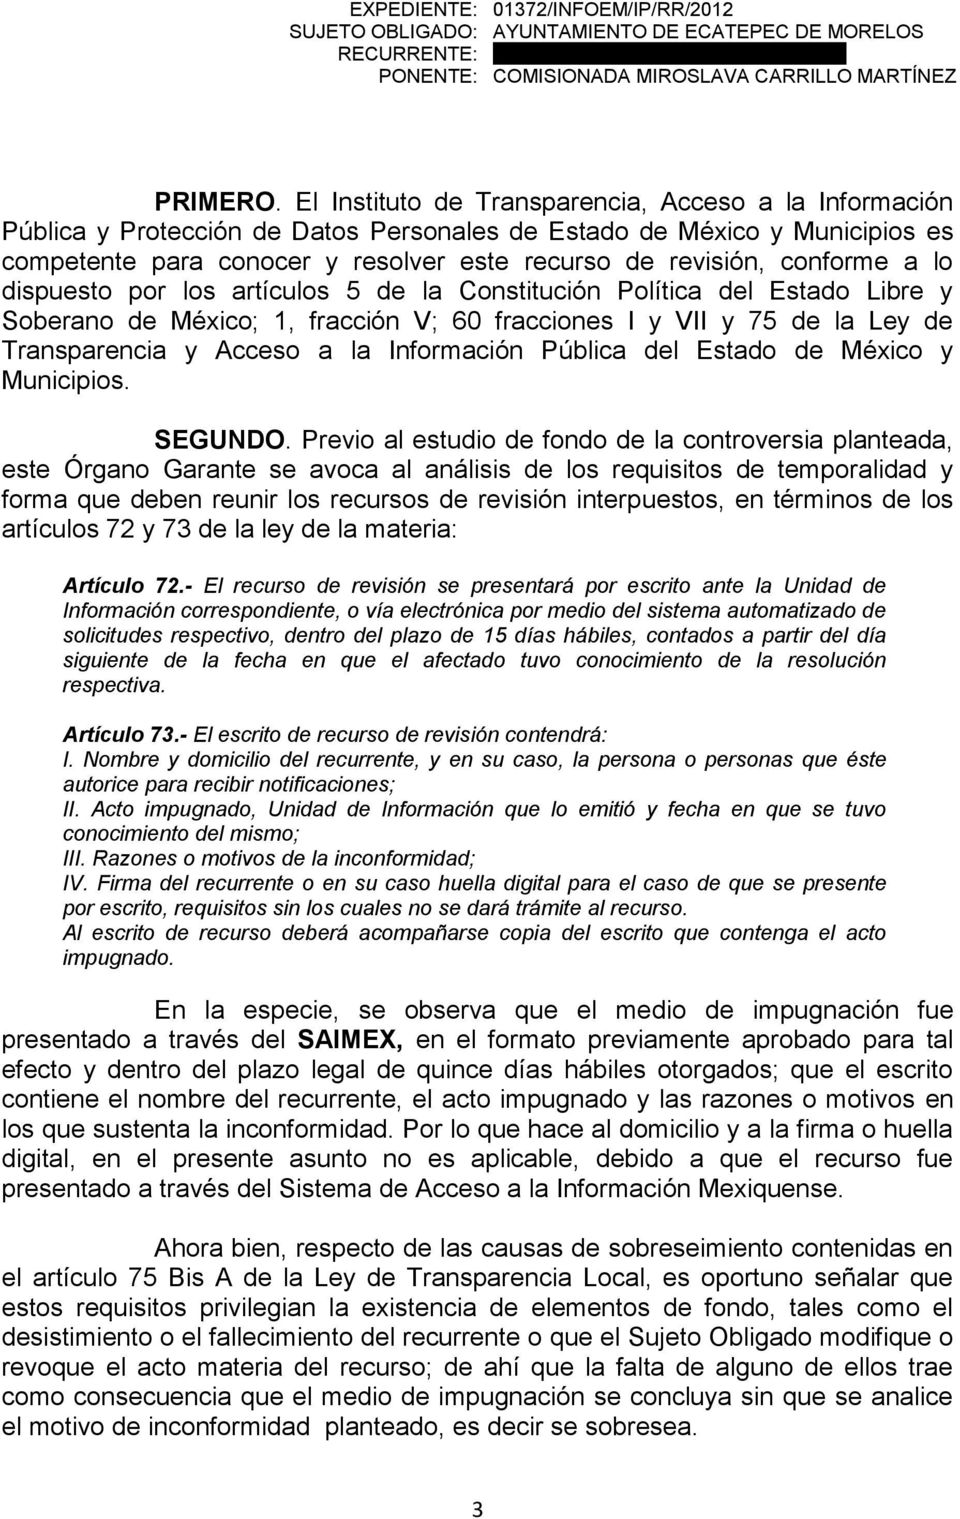 conforme a lo dispuesto por los artículos 5 de la Constitución Política del Estado Libre y Soberano de México; 1, fracción V; 60 fracciones I y VII y 75 de la Ley de Transparencia y Acceso a la